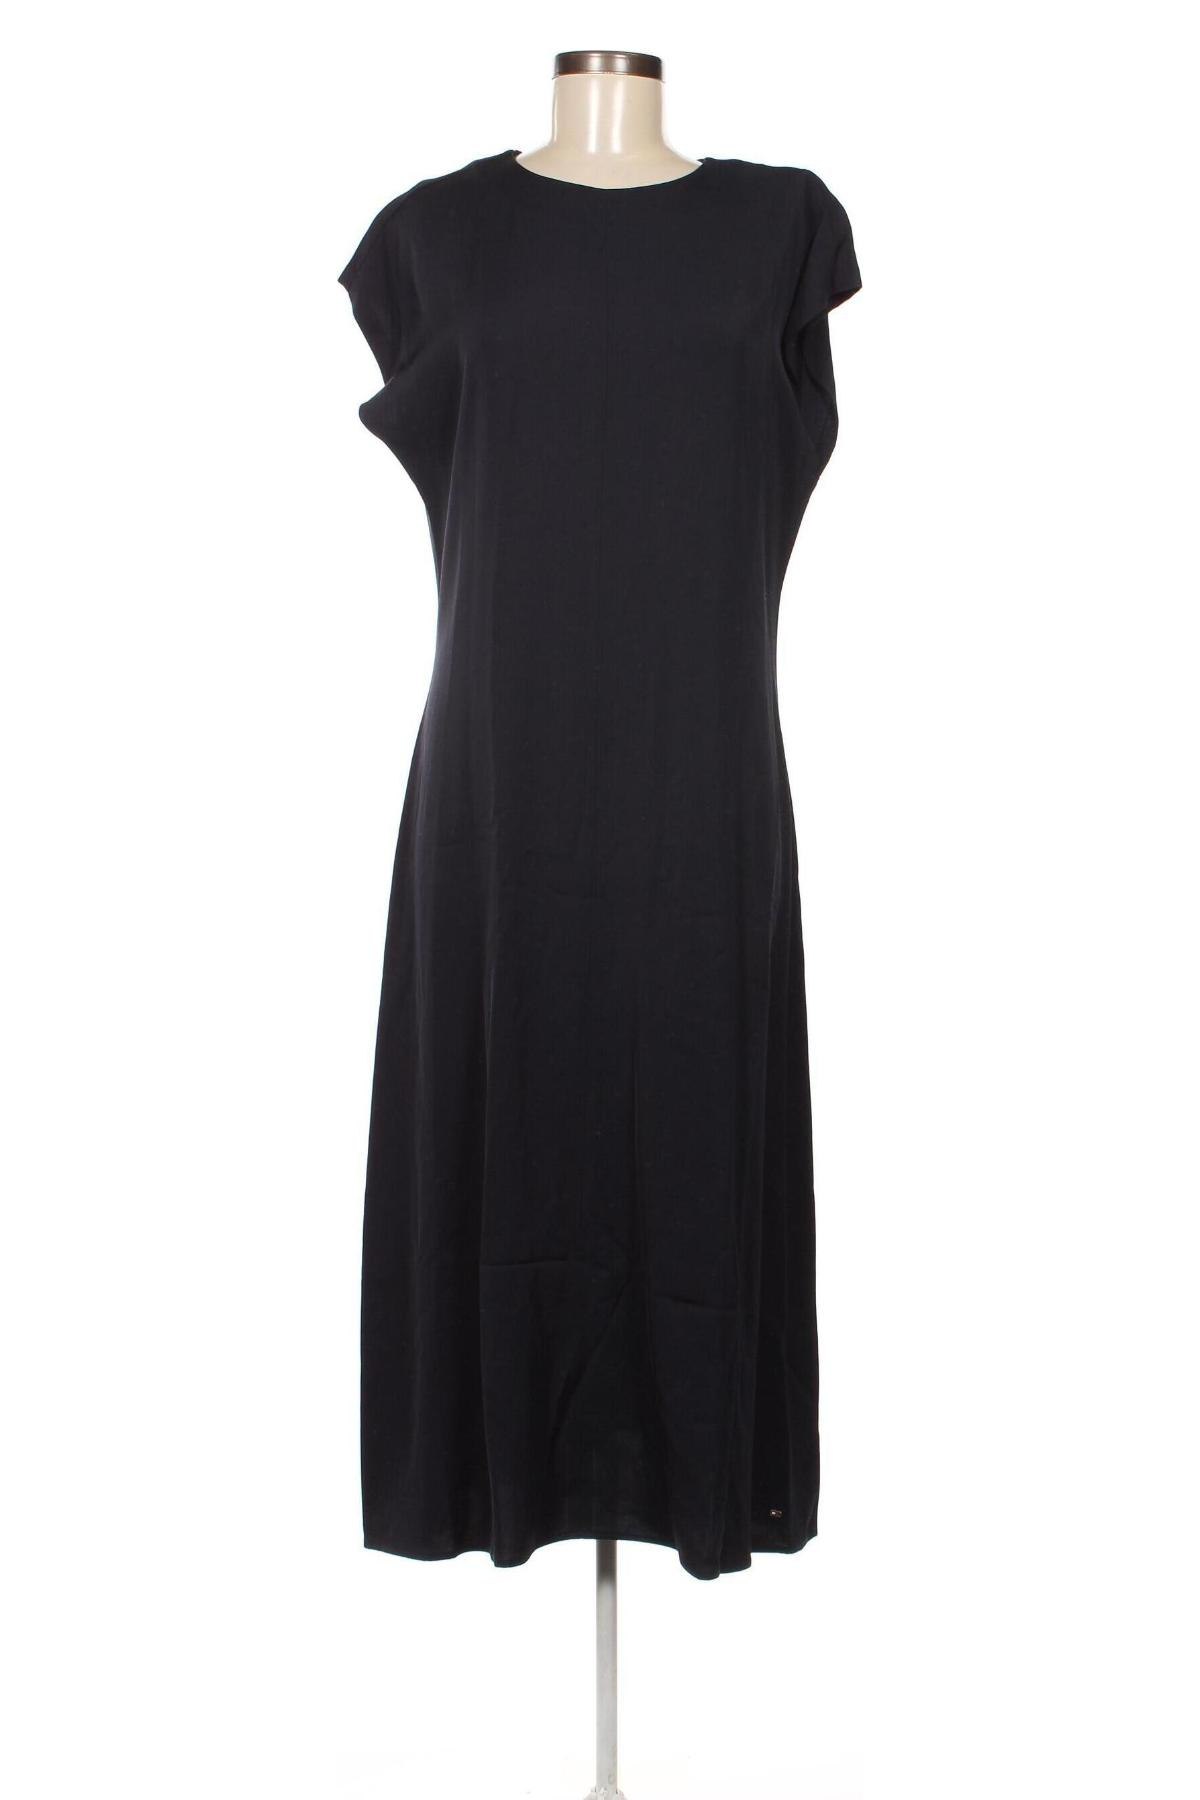 Φόρεμα Tommy Hilfiger, Μέγεθος M, Χρώμα Μπλέ, Τιμή 143,30 €